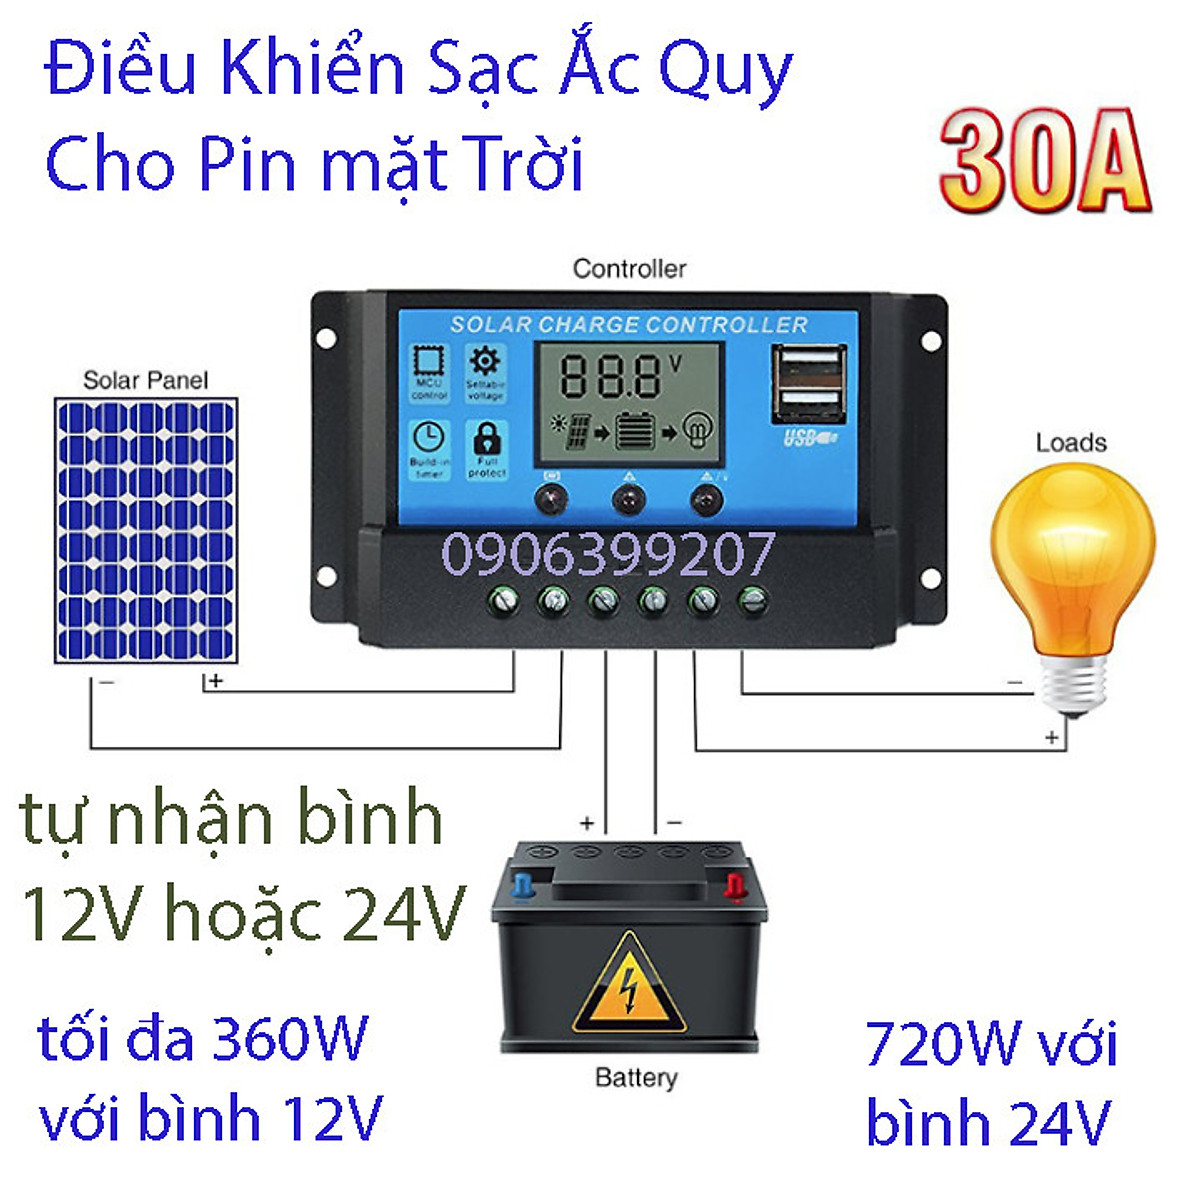 Ưu Đãi Bộ điều khiển sạc năng lượng mặt trời 30A tự động nhận bình 12V 24V Mua Ngay